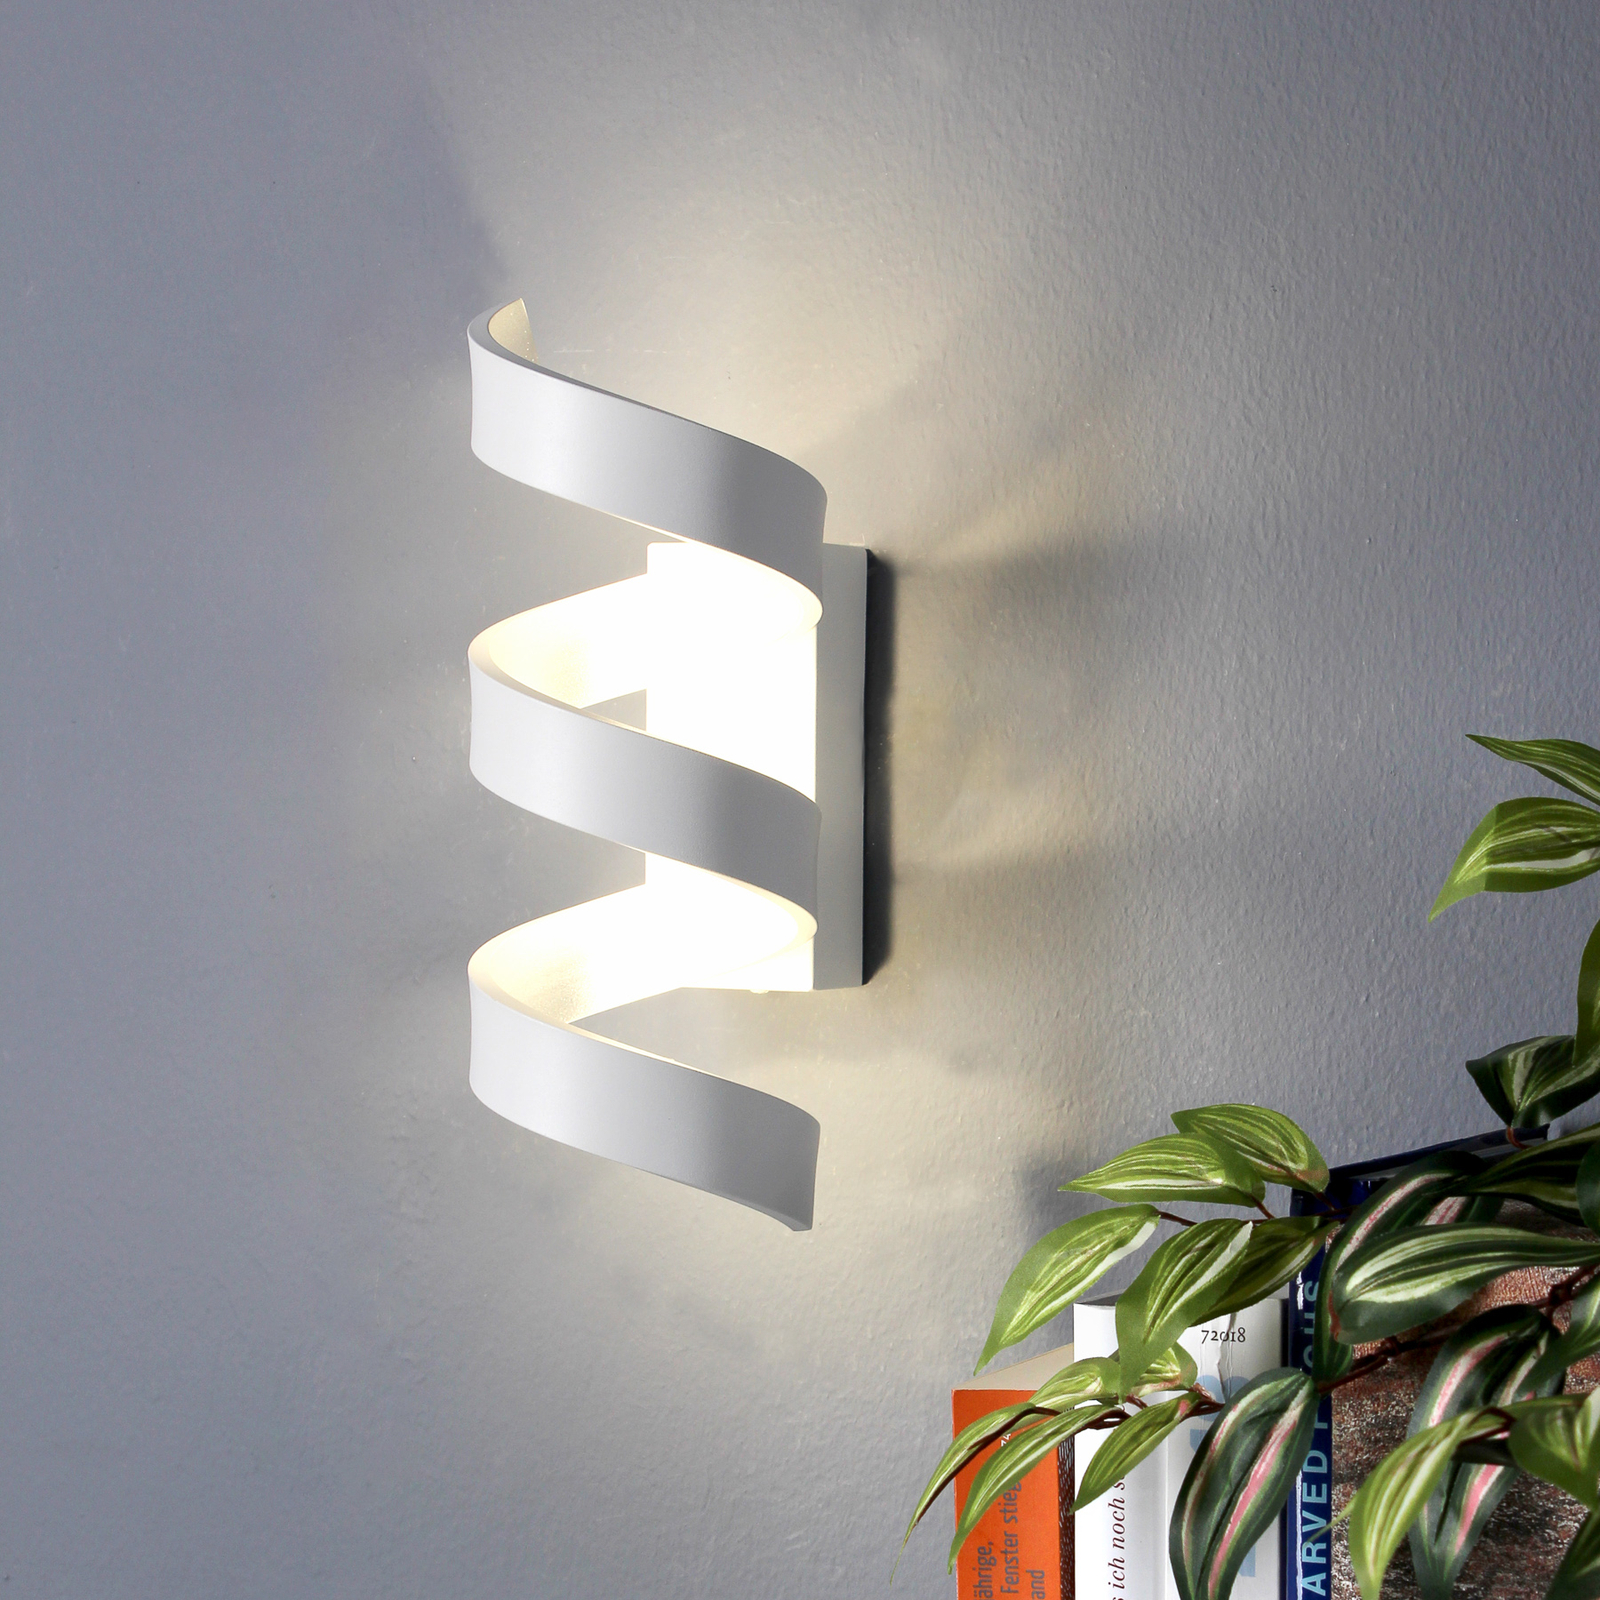 LED nástěnné světlo Helix, bílý stříbrný, 26 cm